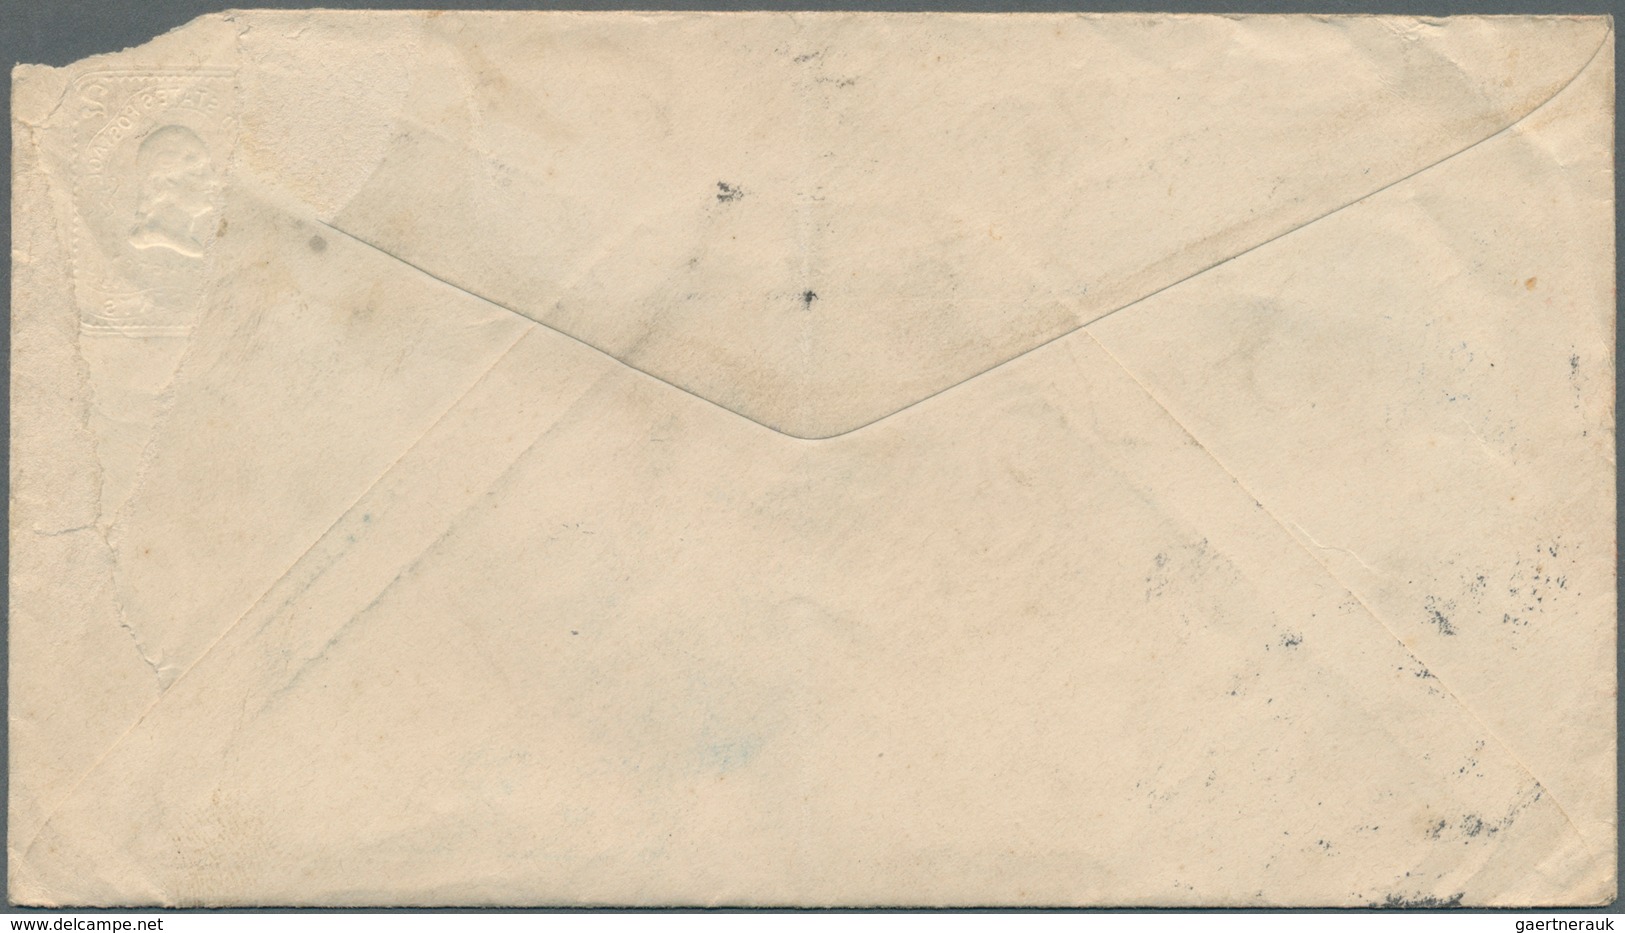 Vereinigte Staaten von Amerika - Besonderheiten: 1890/1904. Lot of 7 covers/postcard bearing some at